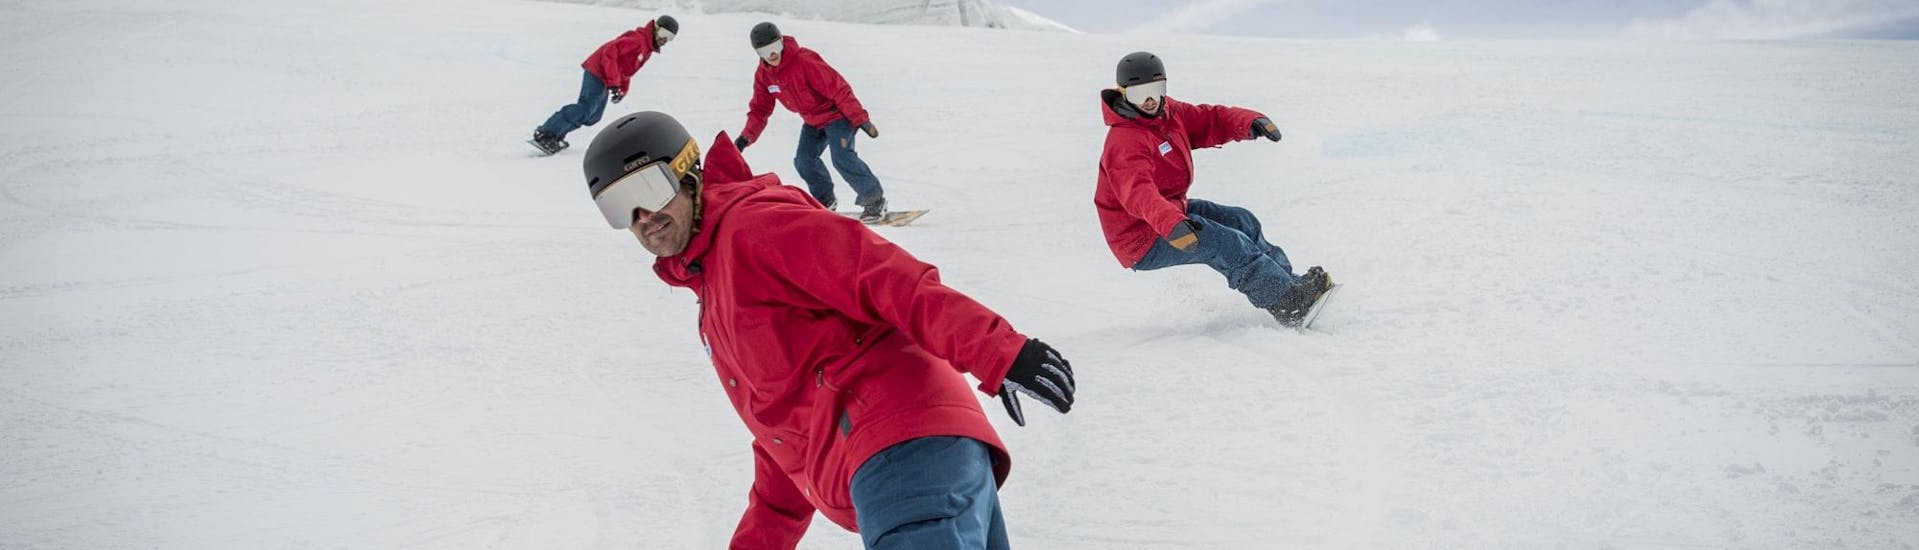 Clases de snowboard a partir de 6 años con experiencia.